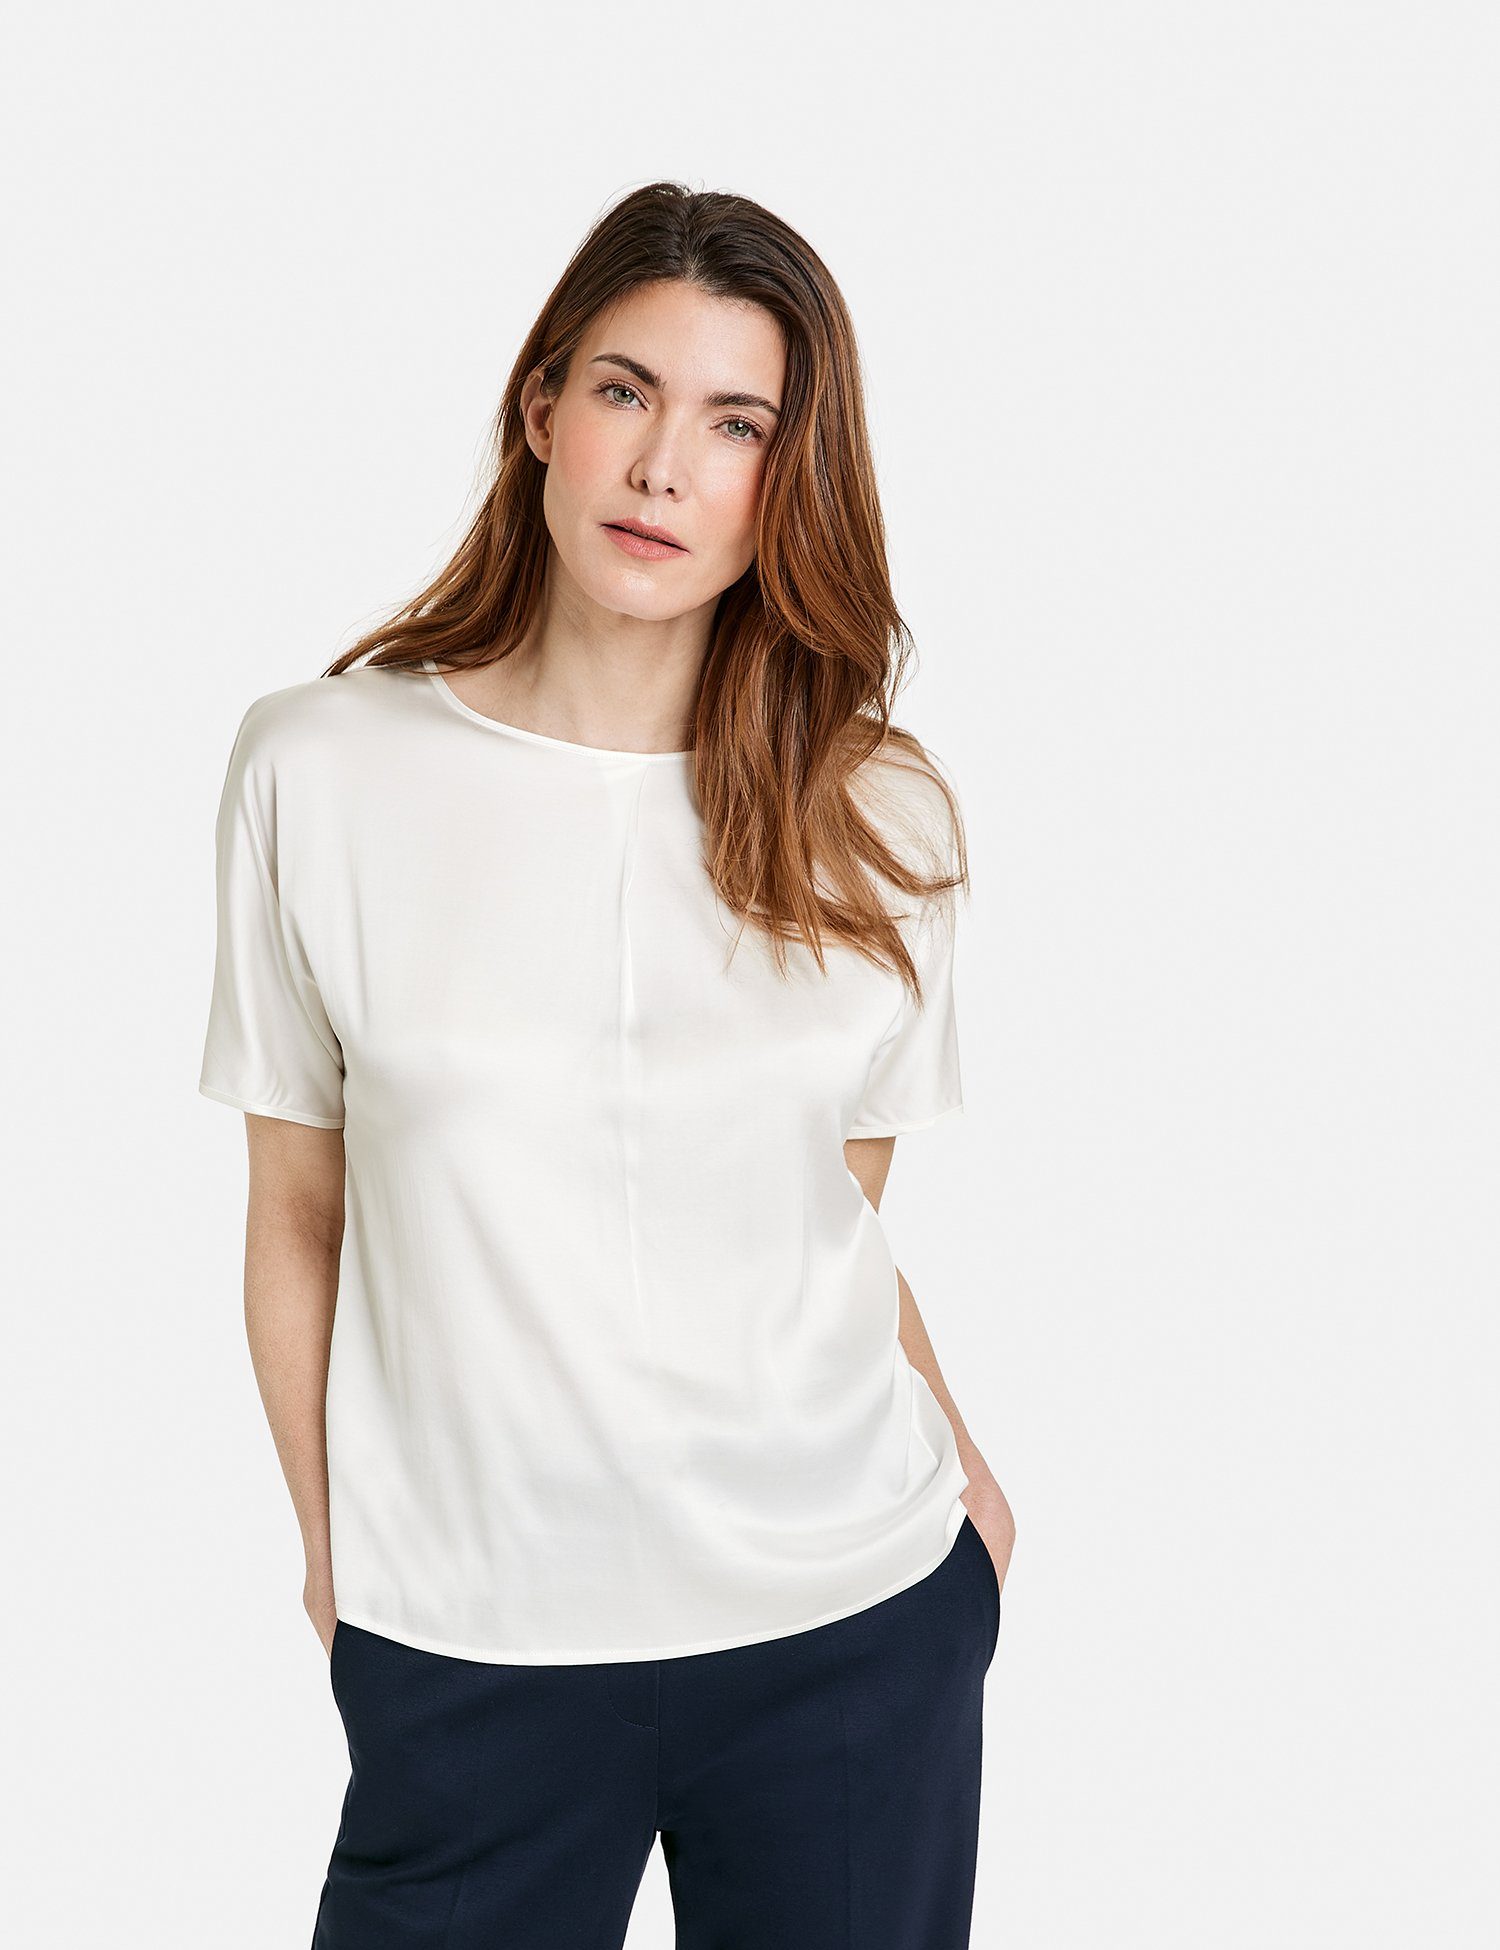 Kurzarmshirt Blusenshirt WEBER Off-white gelegter Ausschnitt mit Falte GERRY am